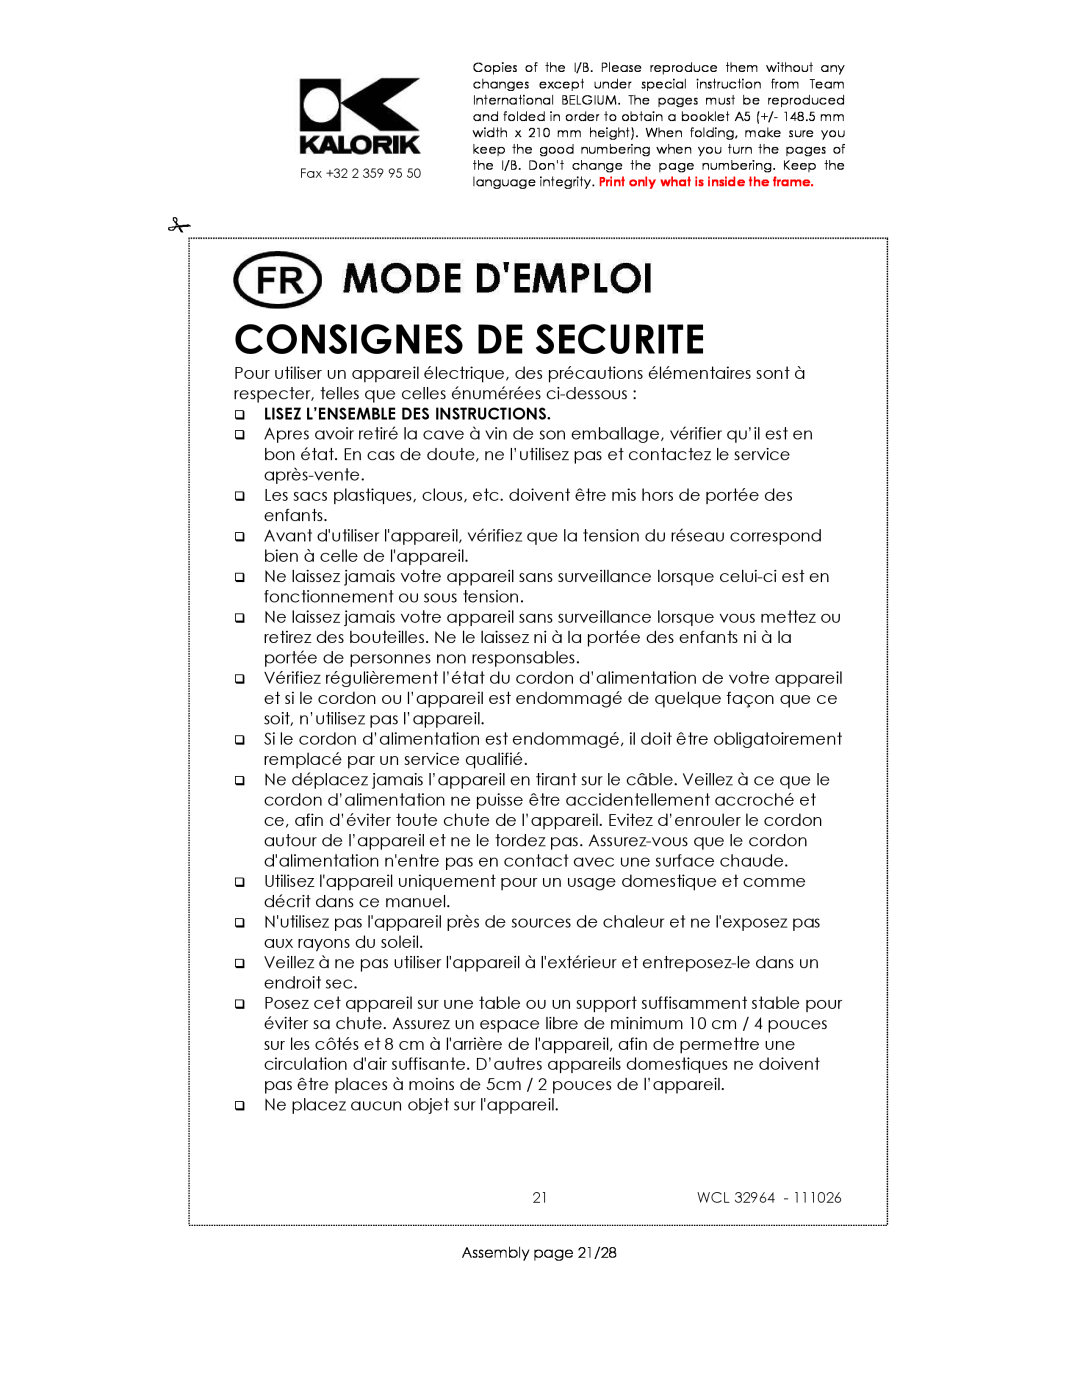 Kalorik USK WCL 32964 115V~130W manual Consignes De Securite, Lisez L’Ensemble Des Instructions 